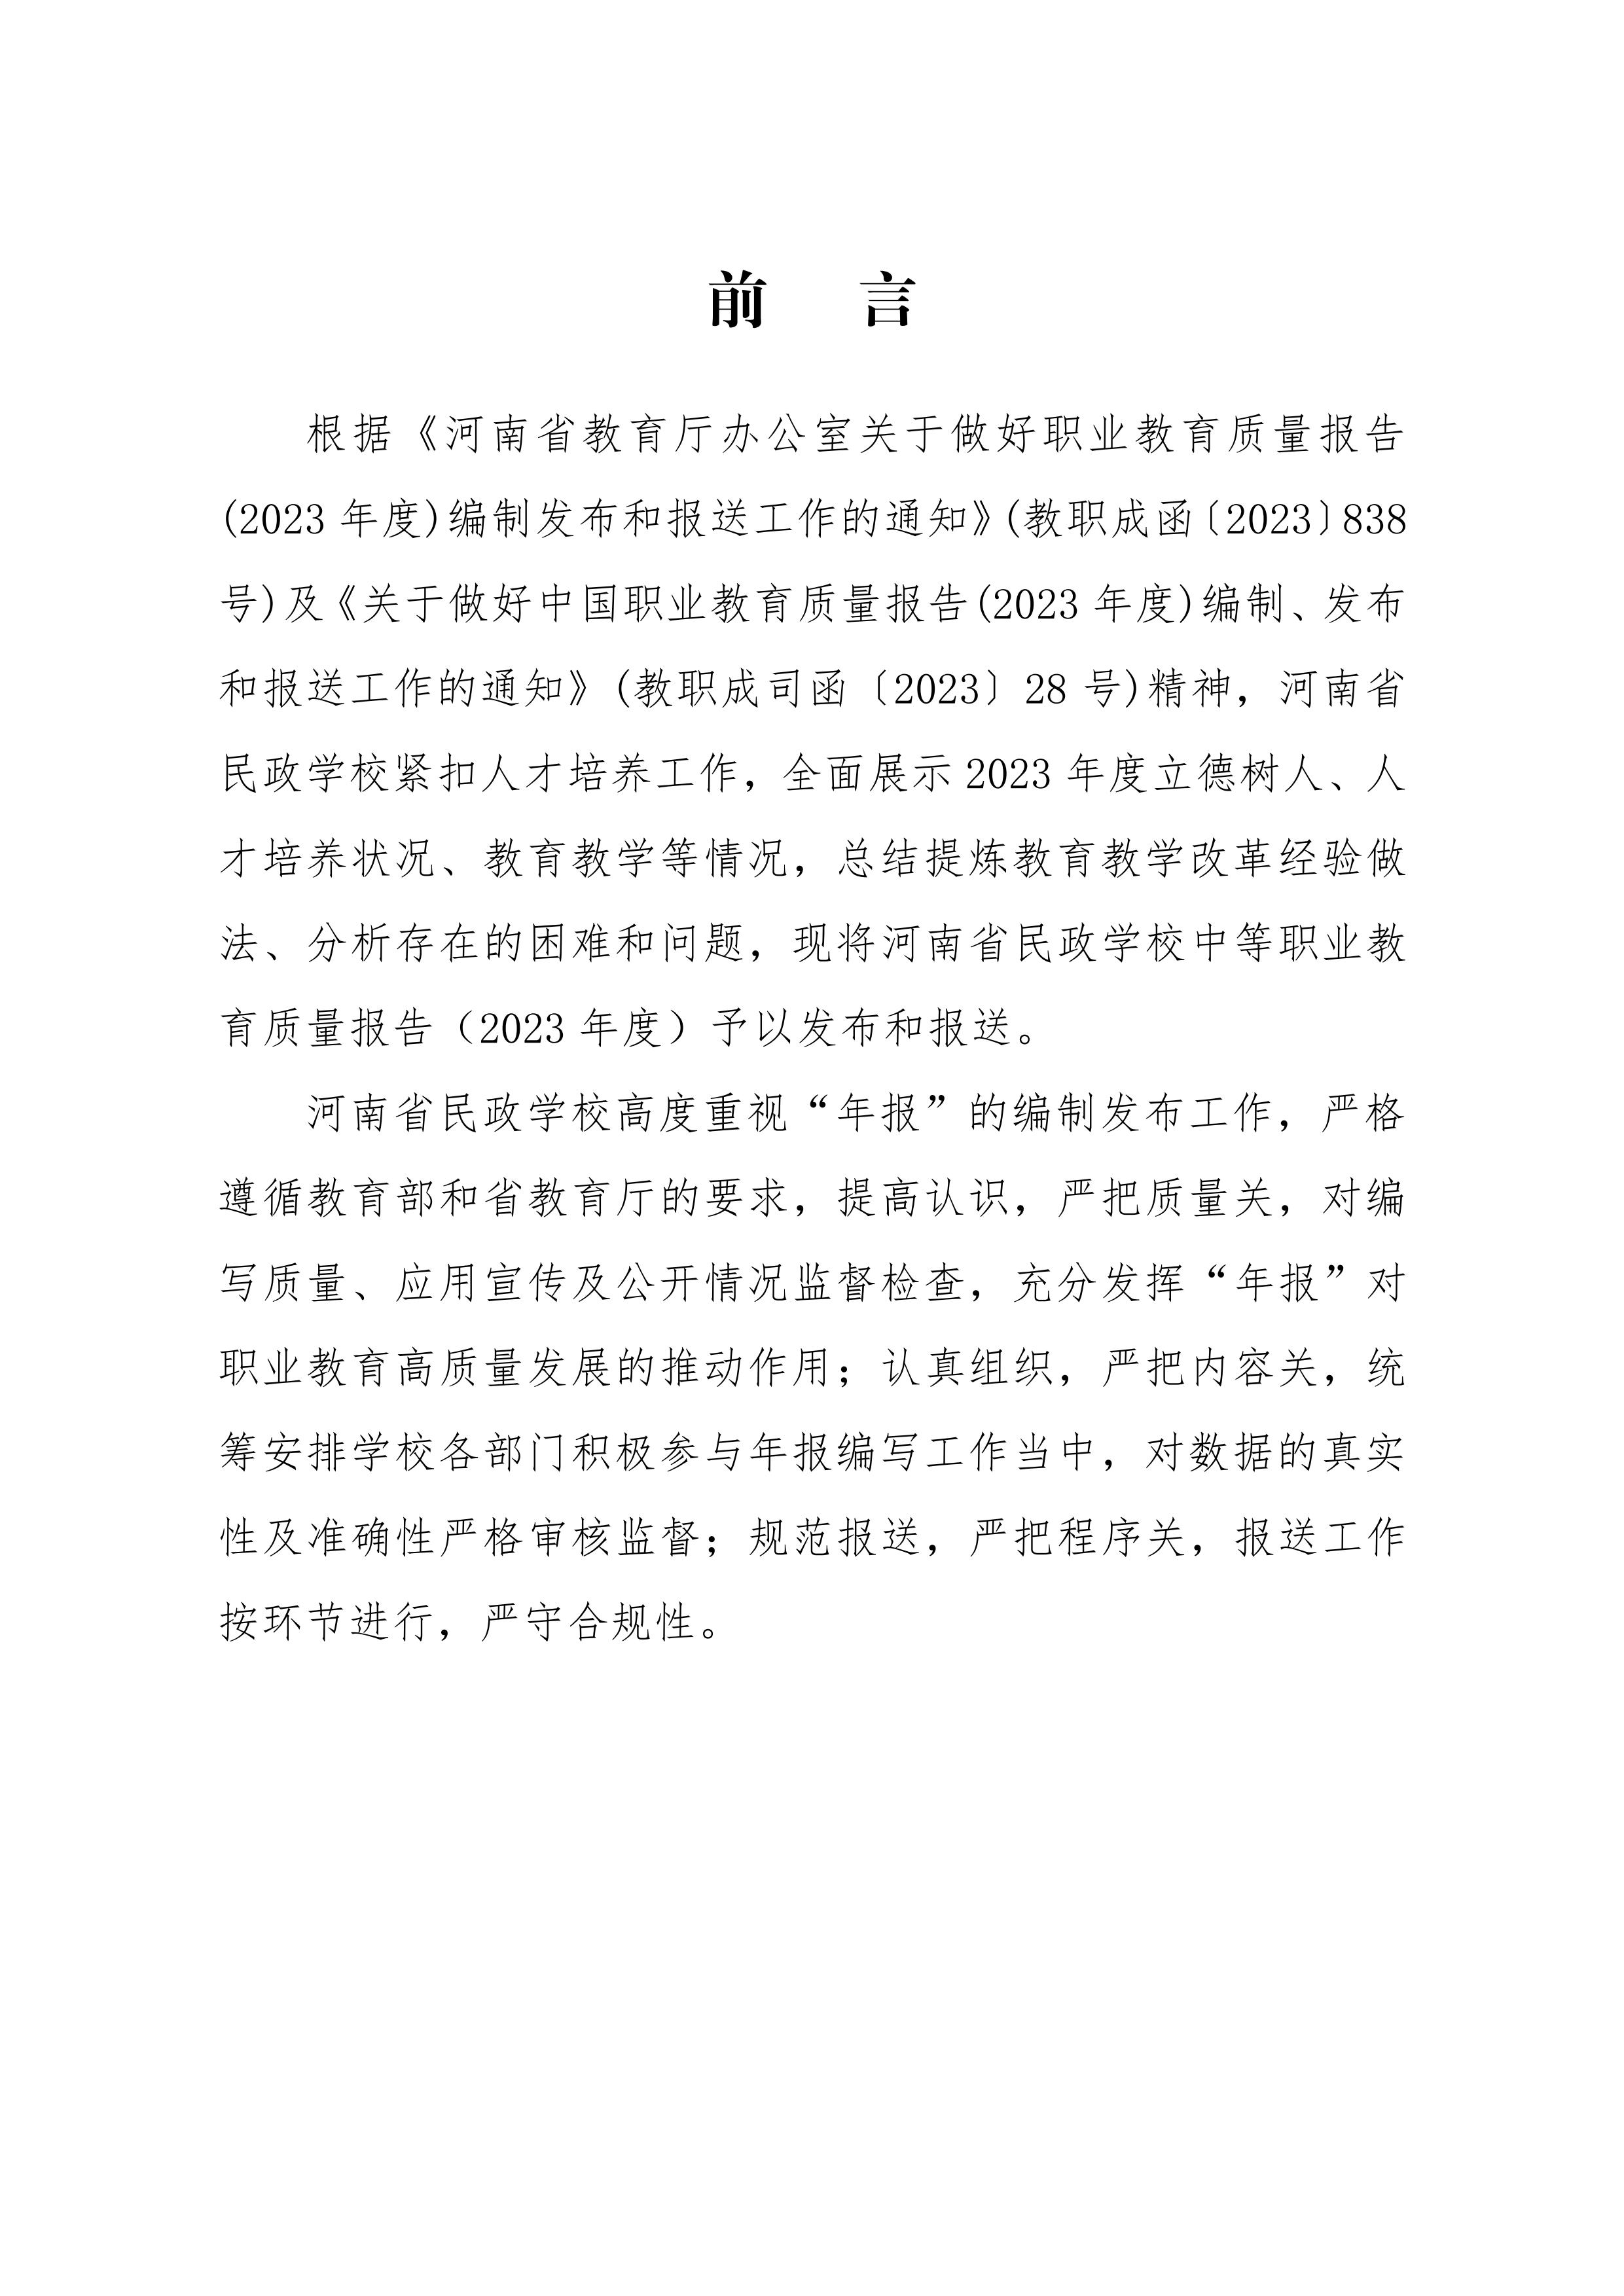 河南省民政学校职业教育质量报告（2023年度）发布版_01.jpg